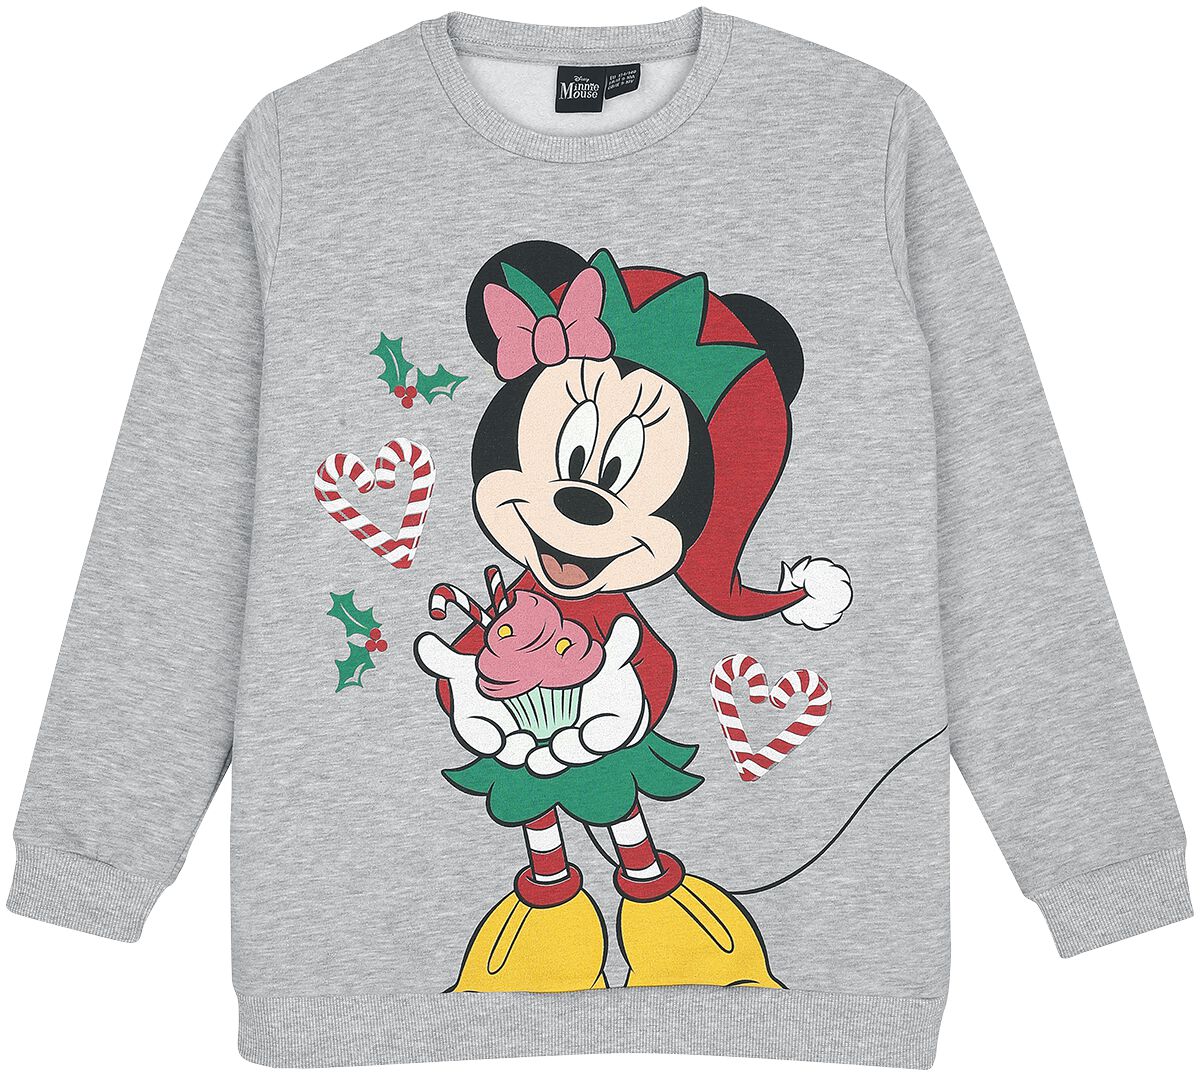 Mickey Mouse - Disney Sweatshirt für Kinder - Kids - X-Mas -Minnie - für Mädchen - grau  - EMP exklusives Merchandise!